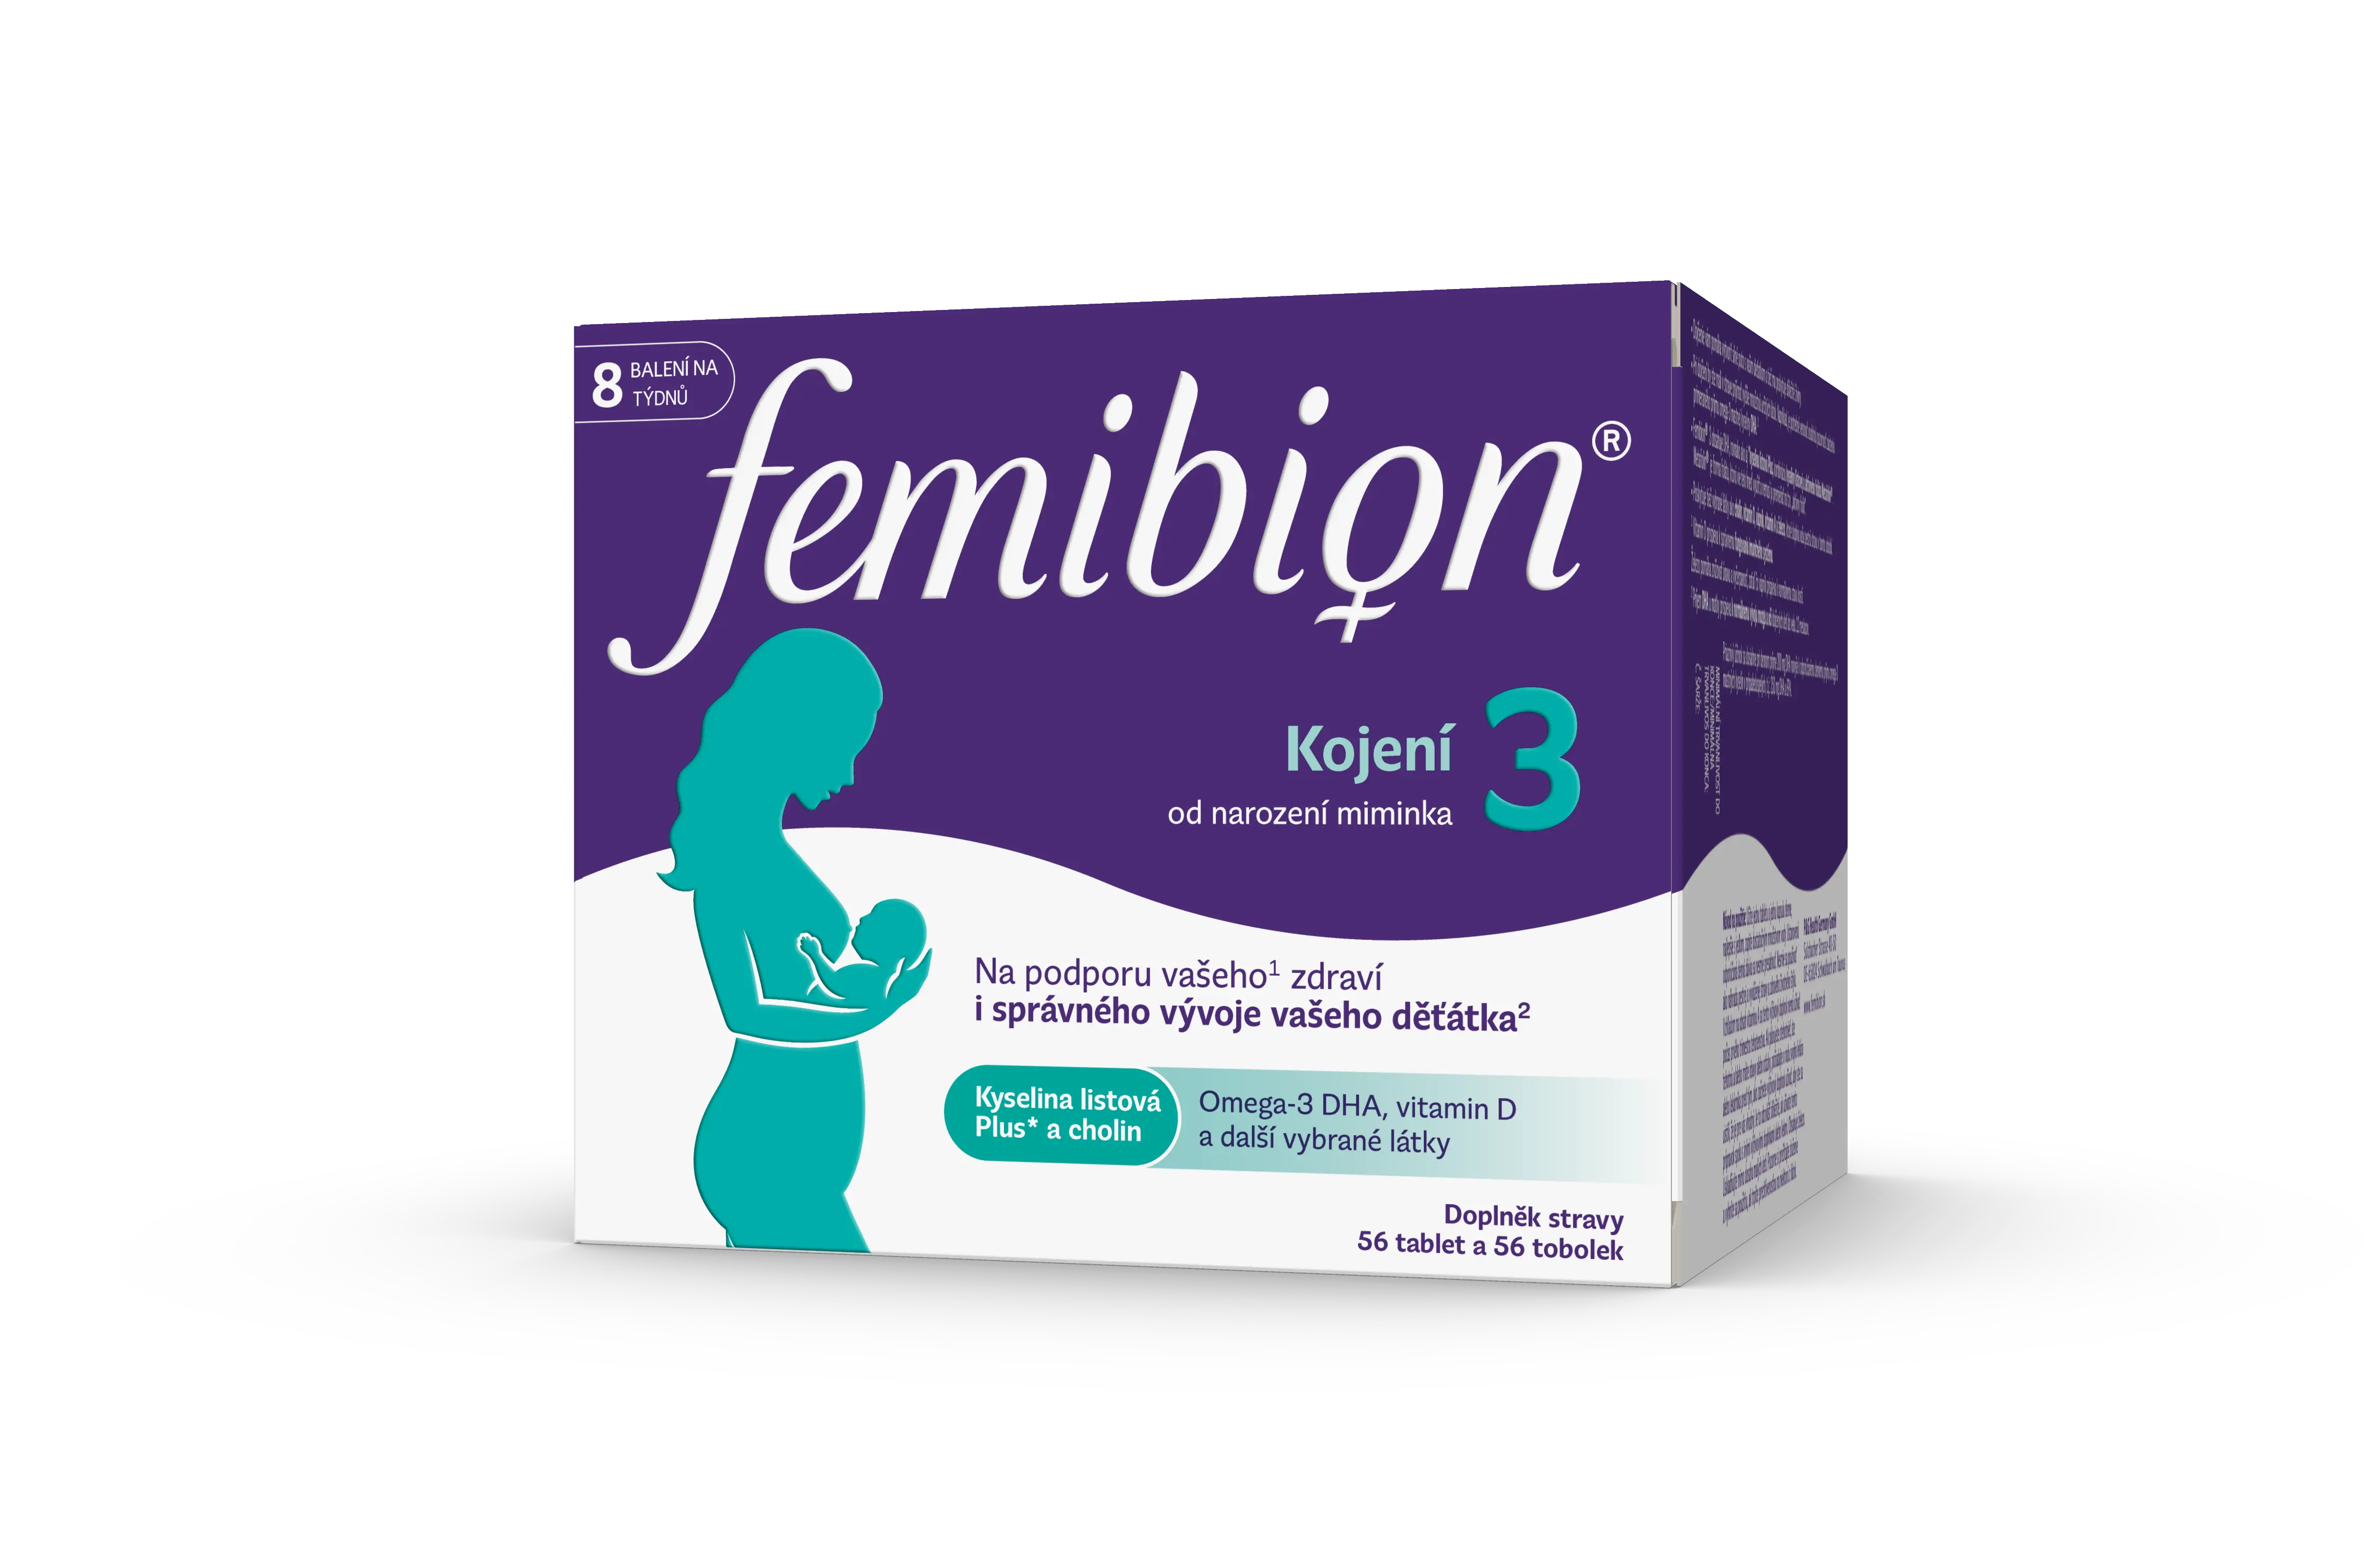 Femibion 3 Kojení 56 tablet + 56 tobolek